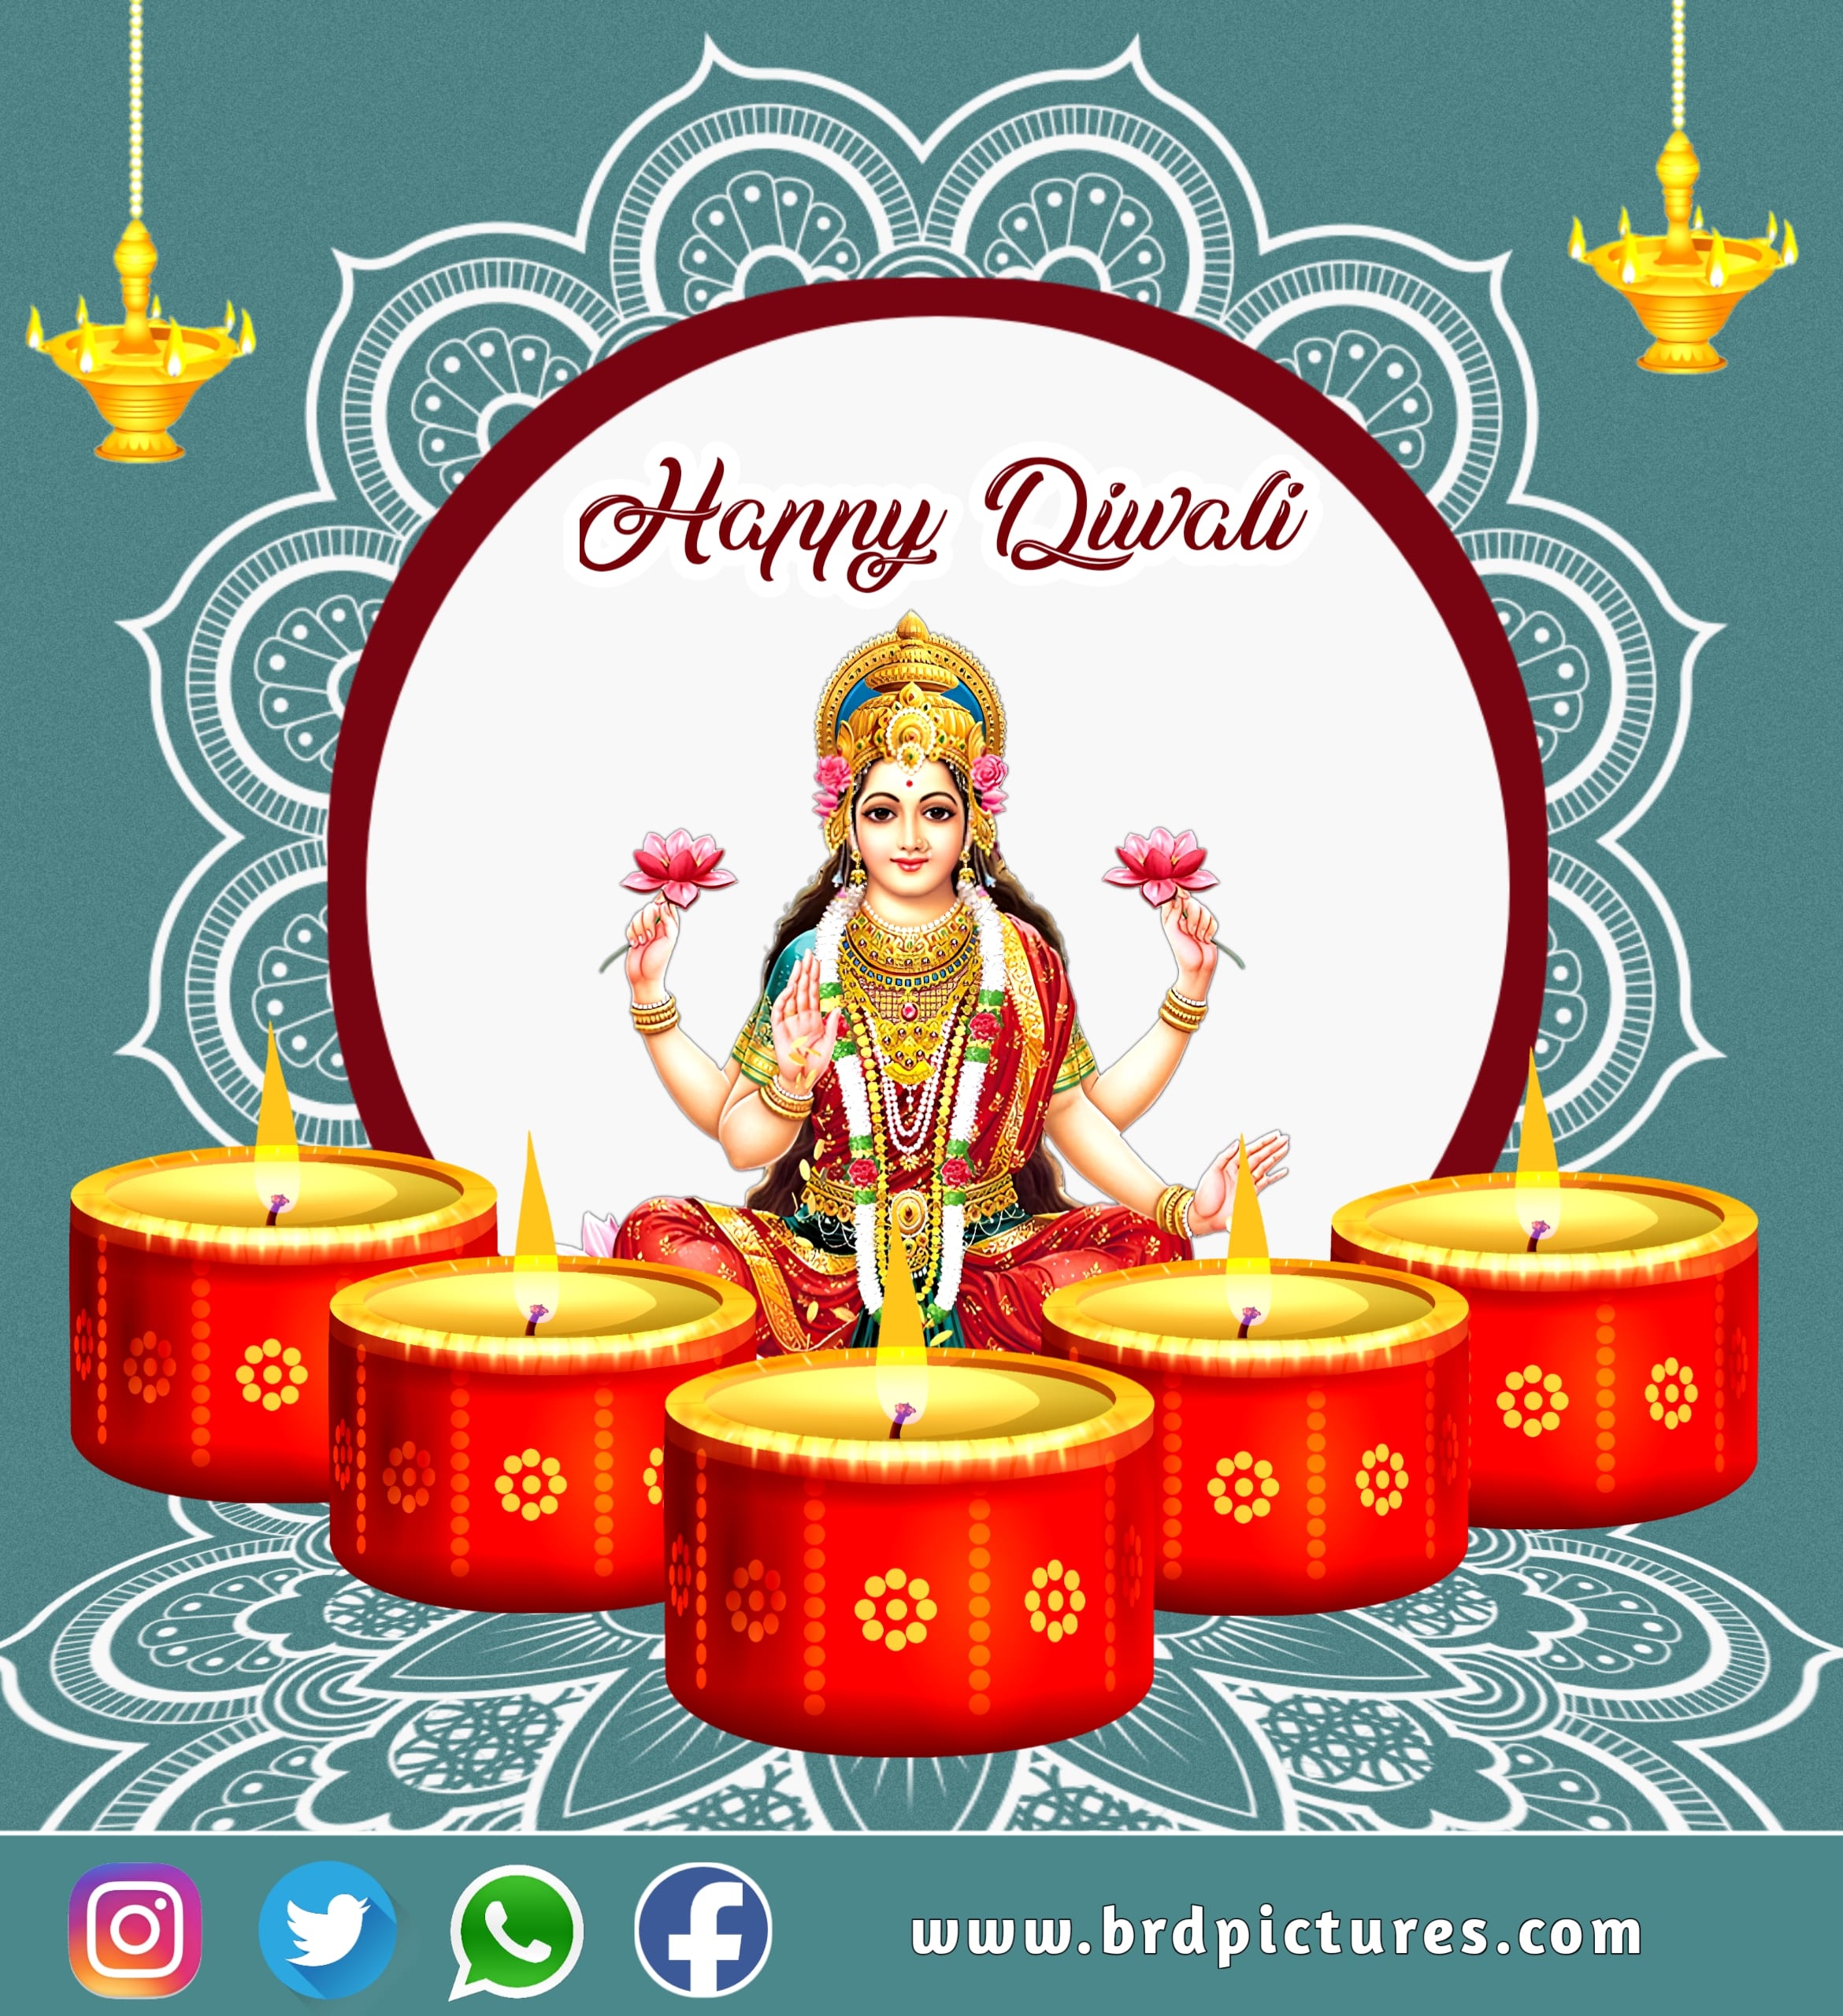 Happy Diwali Wishes Image HD With Mata Laxmi